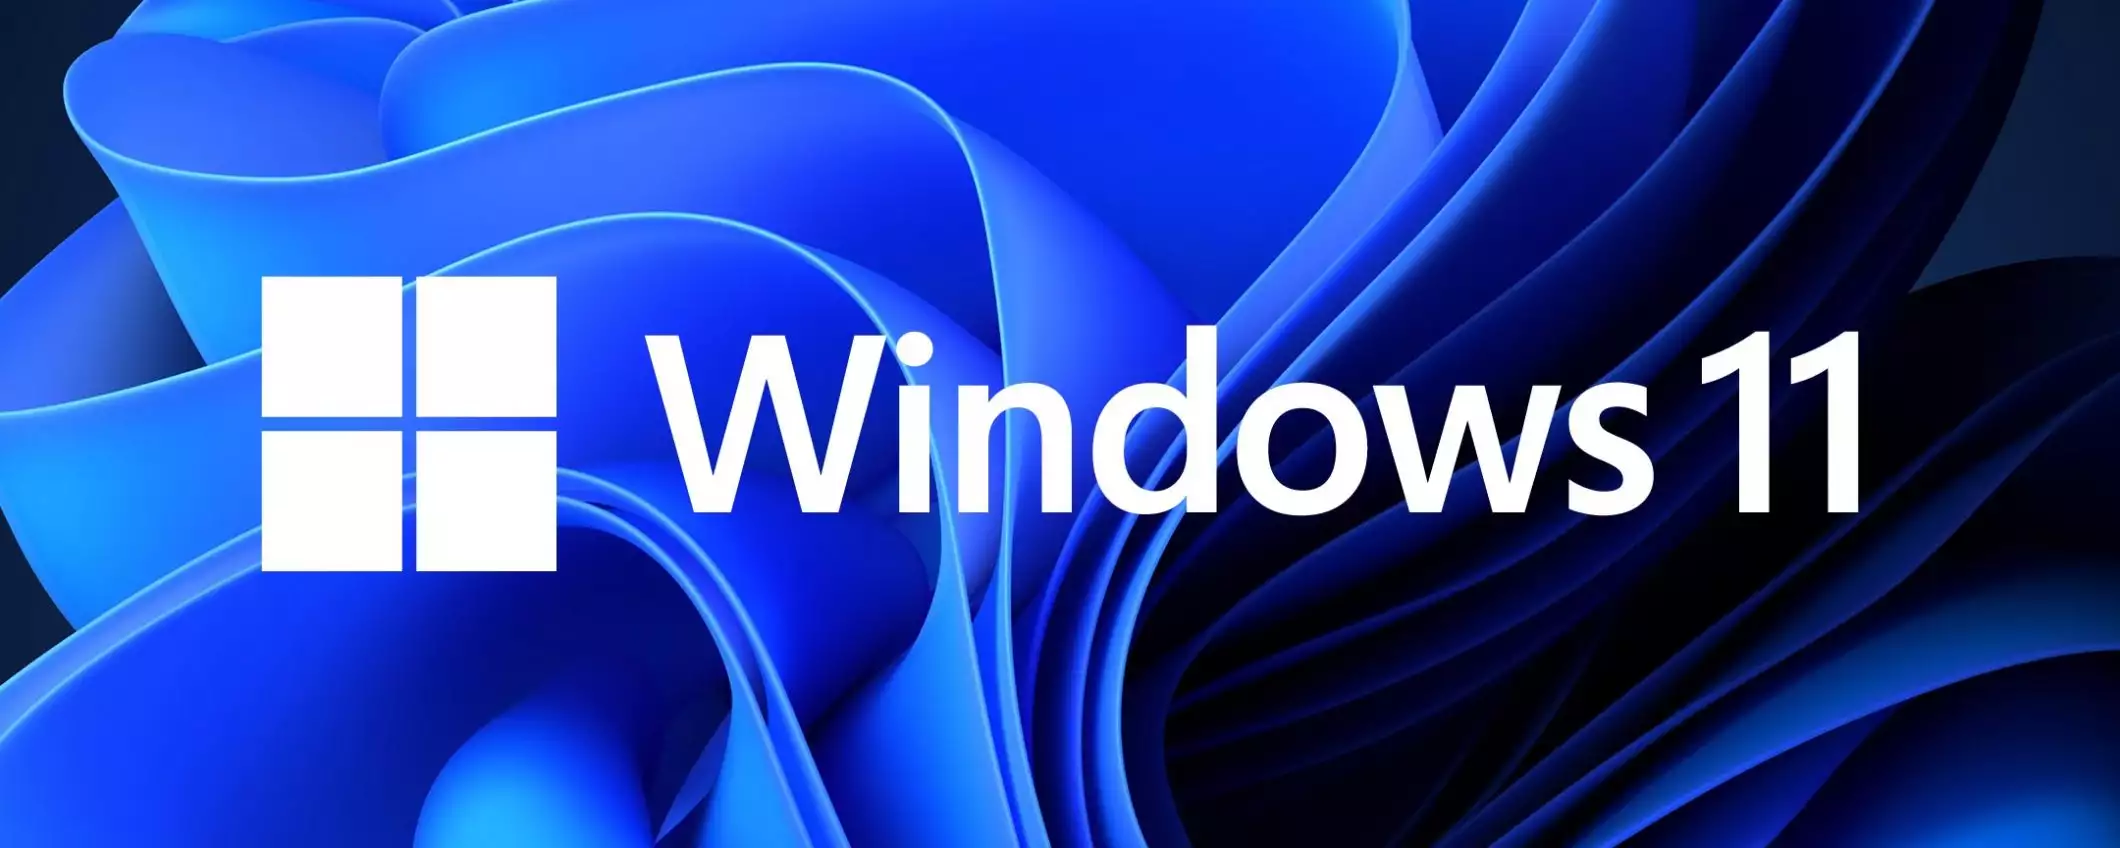 Windows 11: novità delle build 22000.176 e 22449